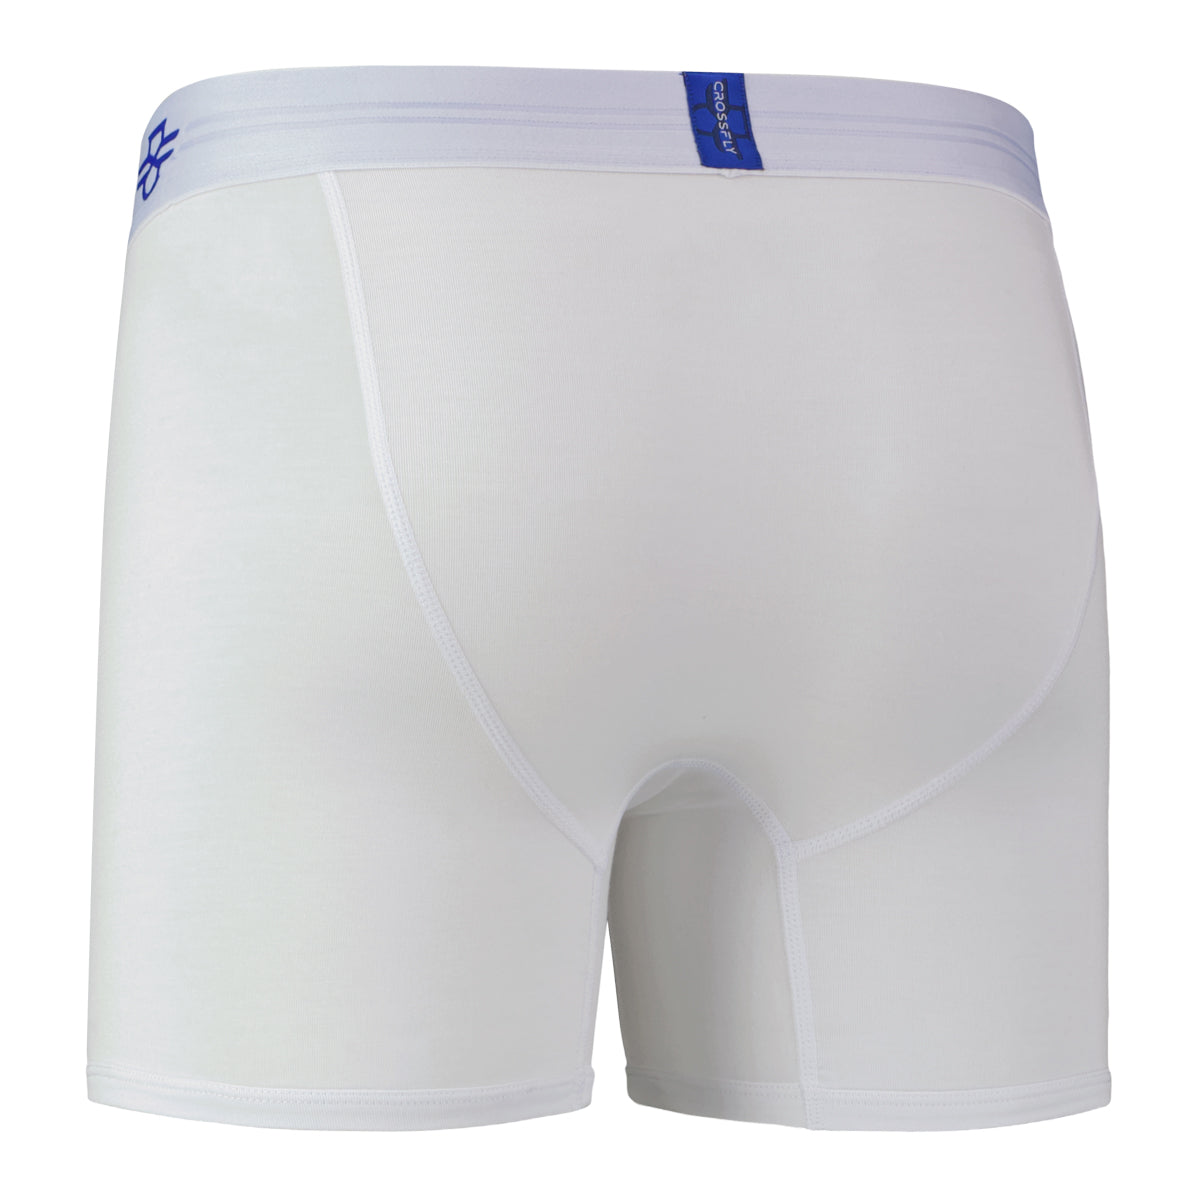 Crossfly Men's Underwear IKON X 6 Boxer Black/Silver Modal 